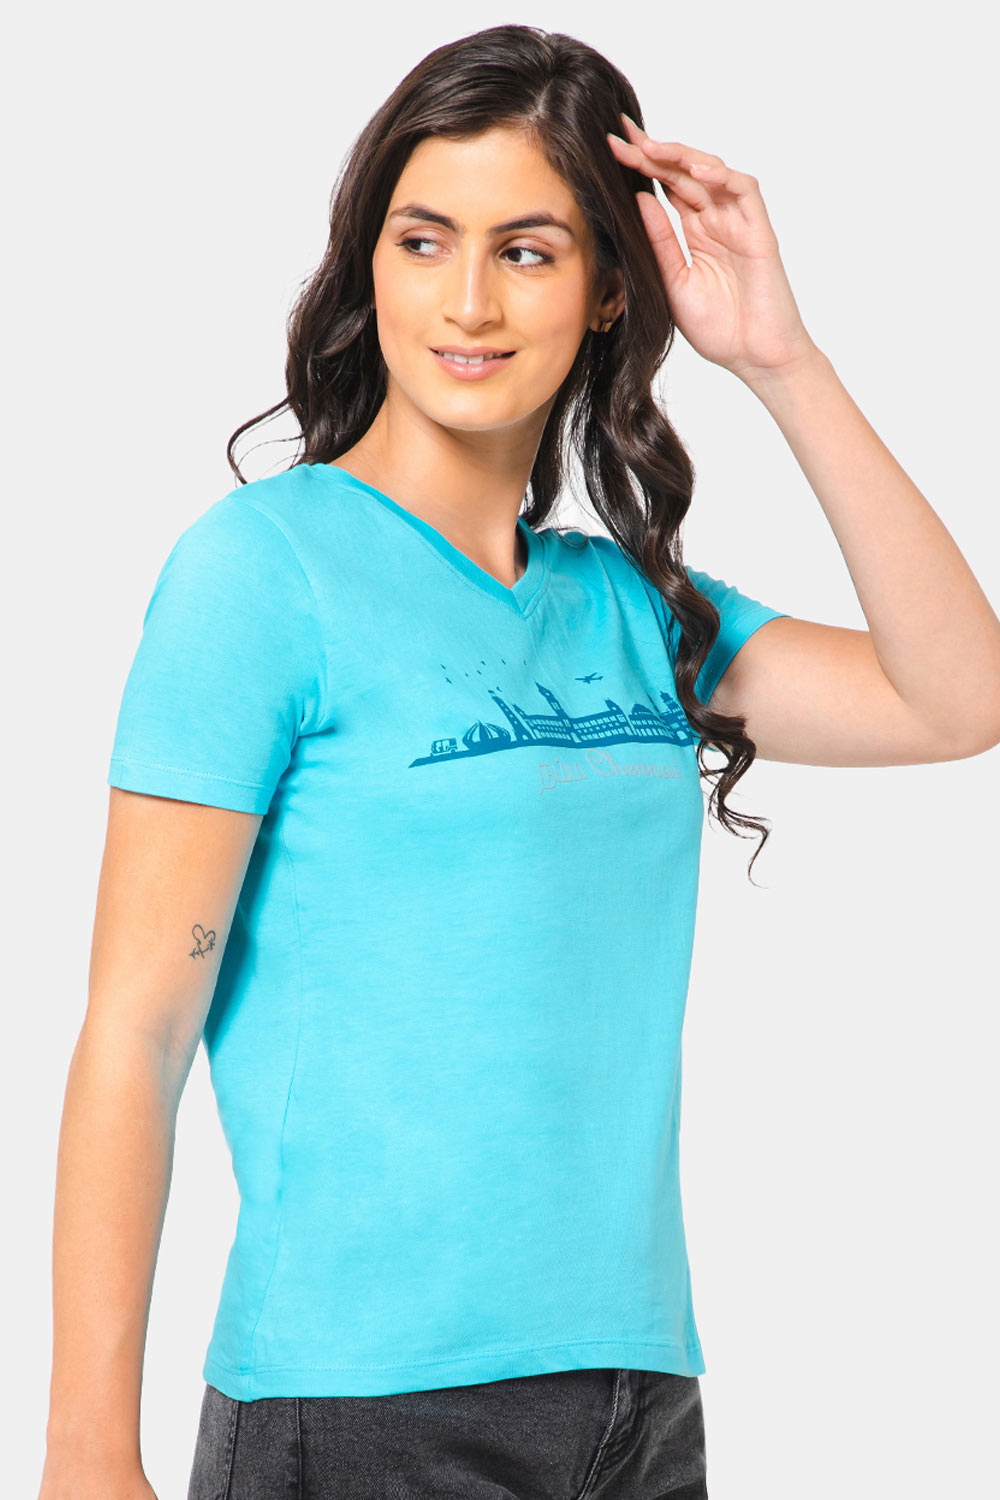 Jusperf Women T-shirt - SKY BLUE - SN05